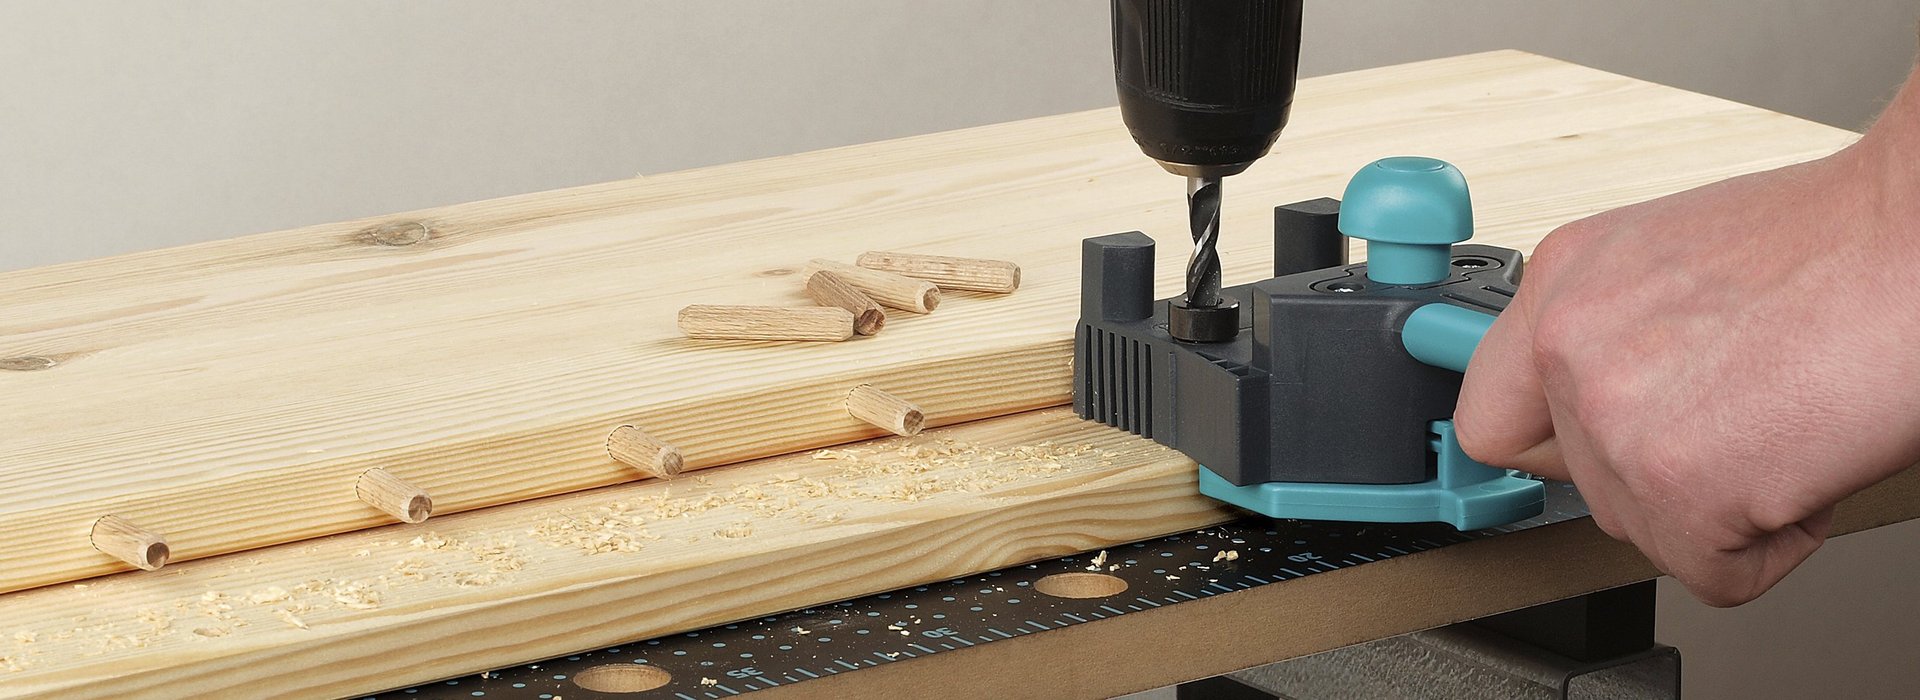 Spine giunzioni in legno per mobili 6 mm per giunzioni componenti legno